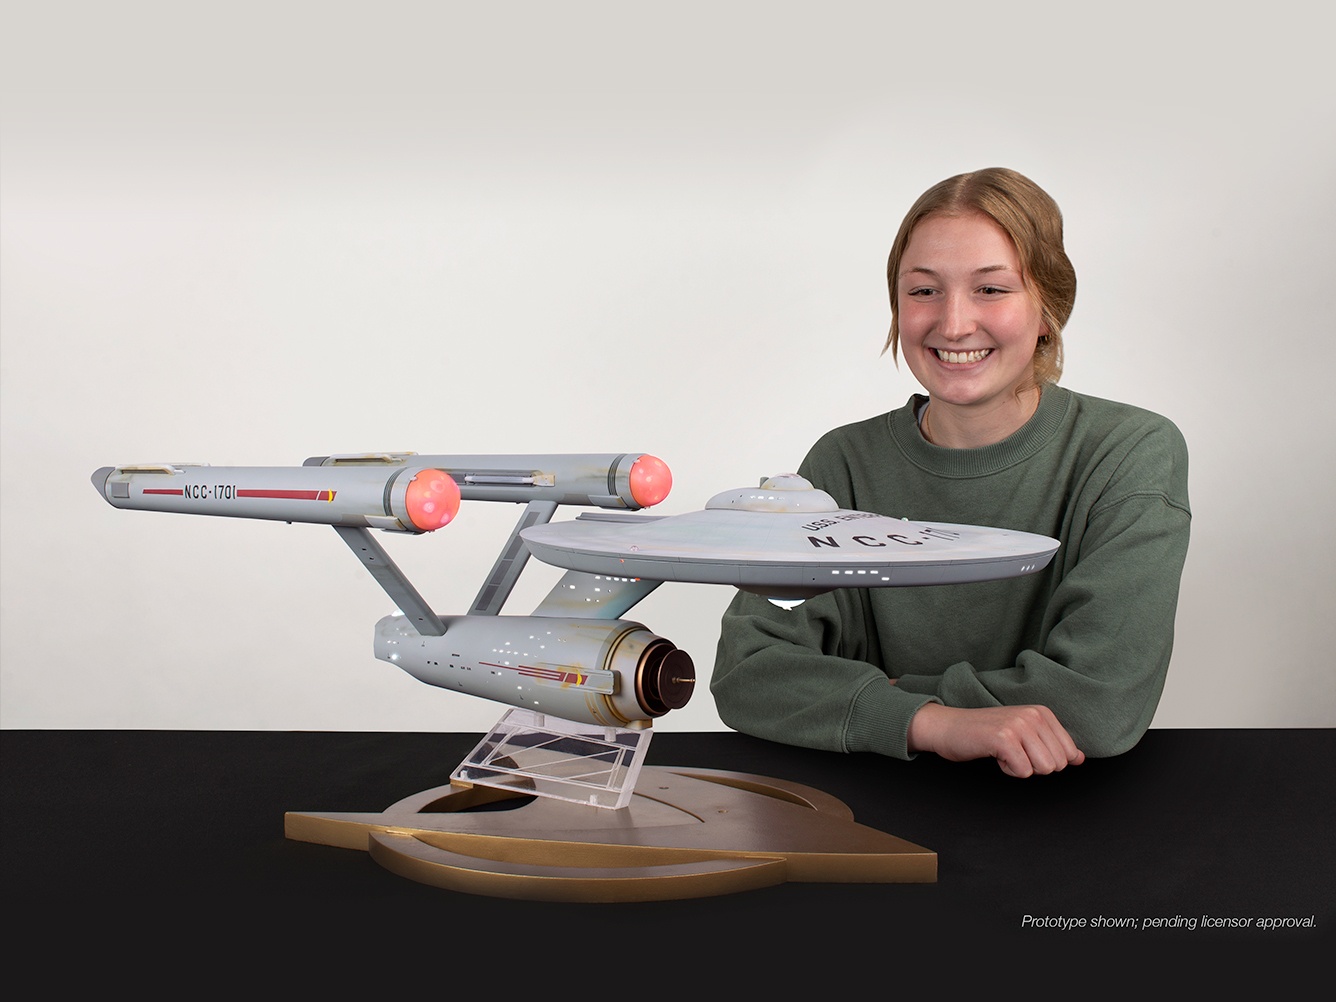 Star Trek Enterprise Model